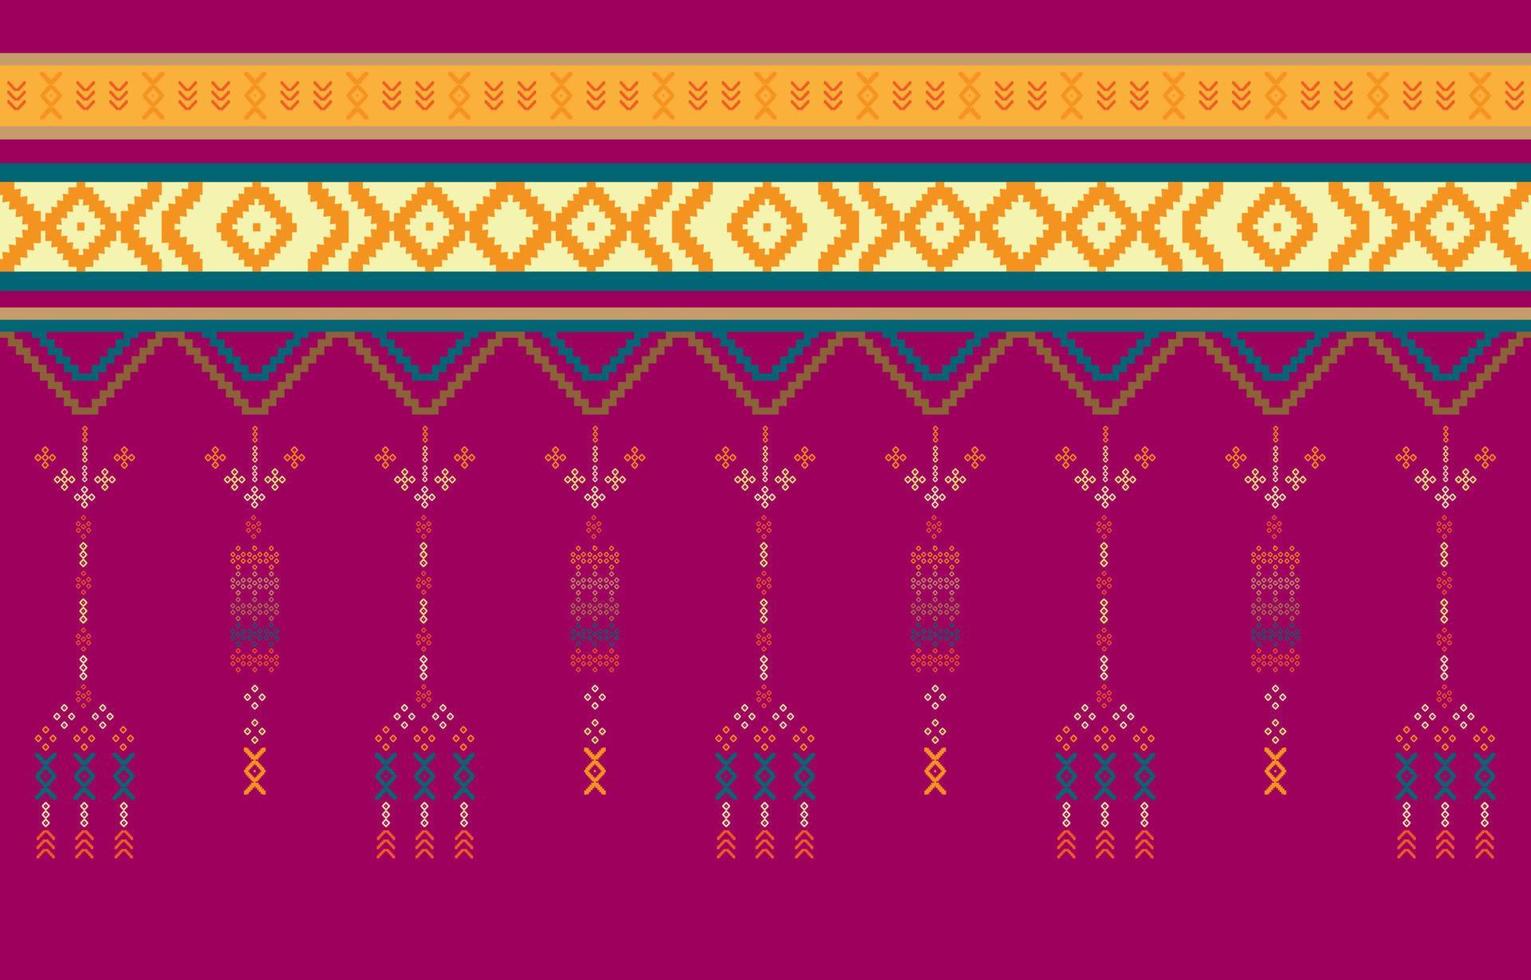 conception traditionnelle de motif oriental ethnique géométrique pour les vêtements, le tissu, le livre et le plan. motifs géométriques et tribaux abstraits, motifs de tissus locaux de conception d'utilisation vecteur